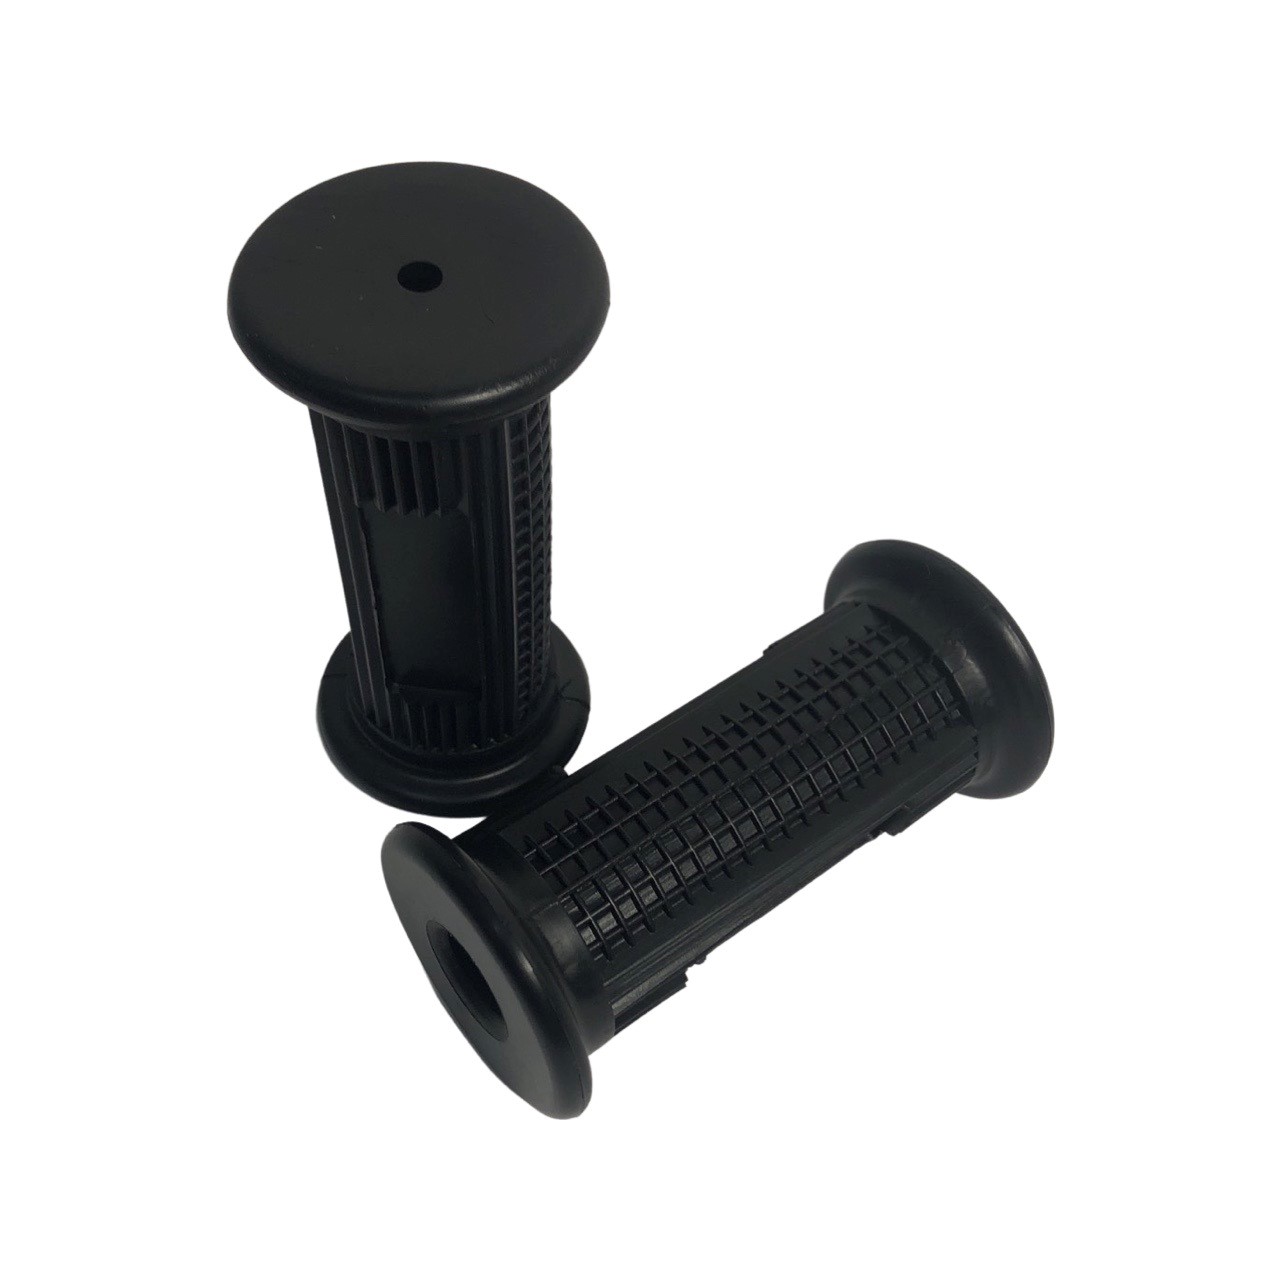 ZUNDAPP/UNIVERSEEL/PUCH Voetrust rubber set voor voetsteun 16mm voor 6269 Onderbouw rubber zwart rond